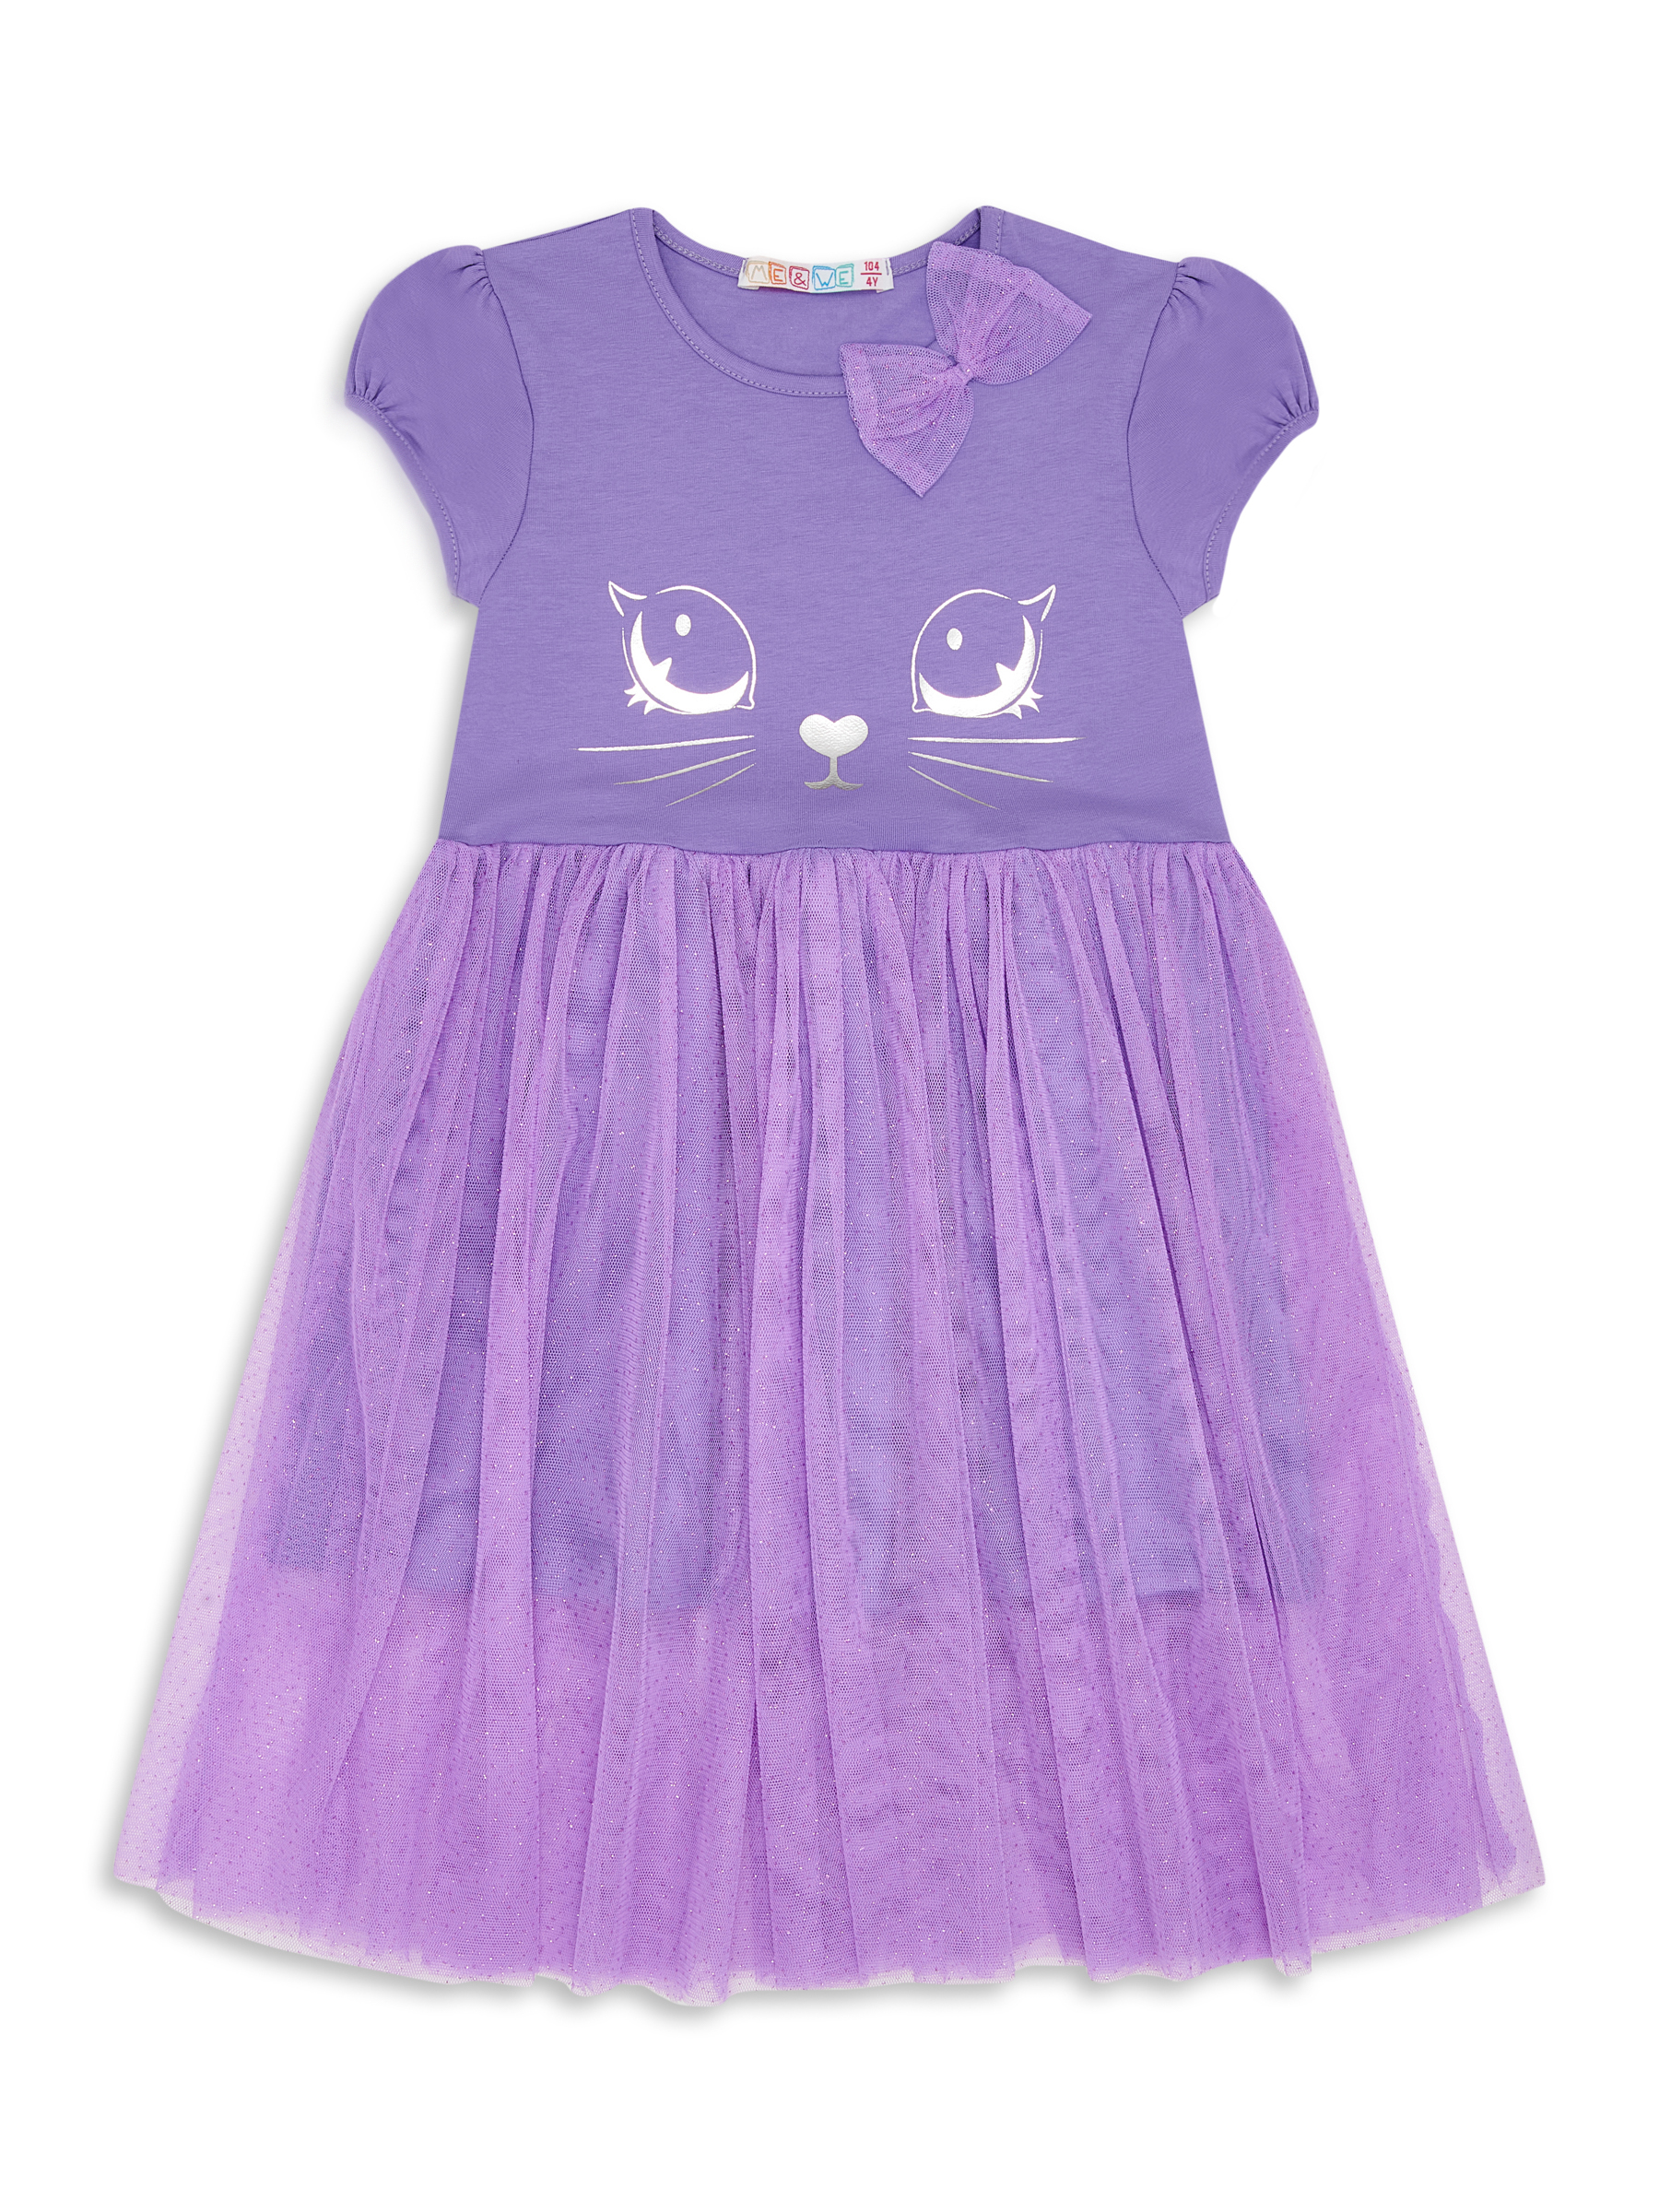 Платье детское Me&We KG218-J601-699 цв. фиолетовый р. 98 пальто детское orso bianco дизель фиолетовый 134